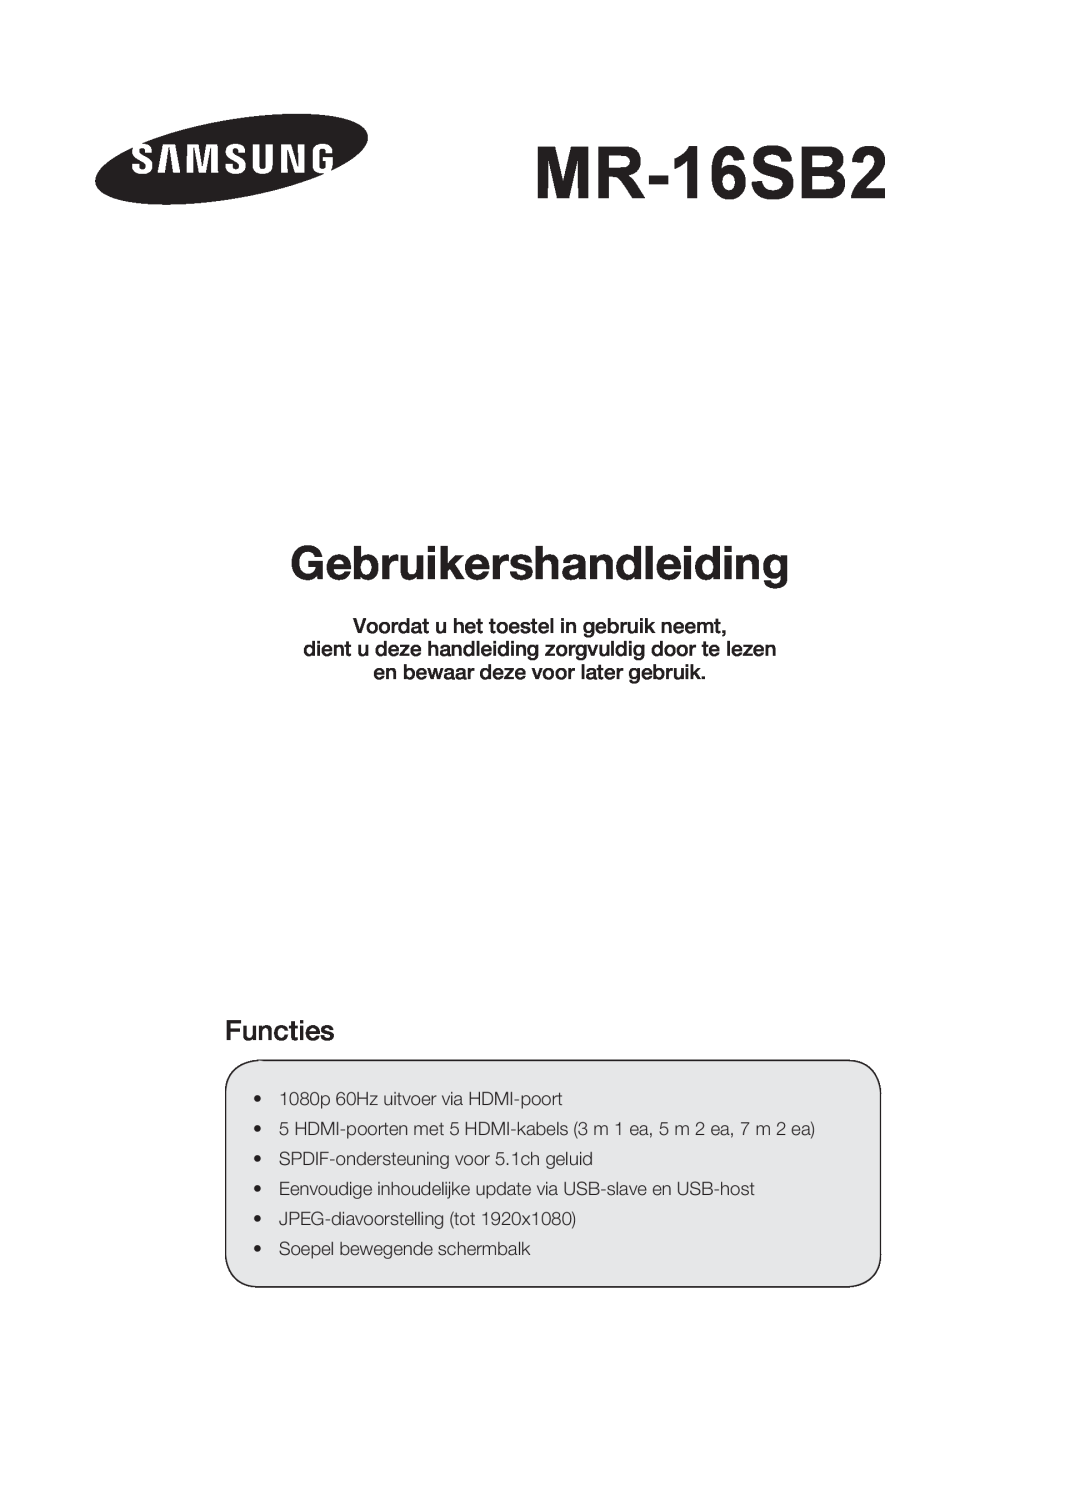 Samsung MR-16SB2 manual Gebruikershandleiding, Functies, Voordat u het toestel in gebruik neemt 